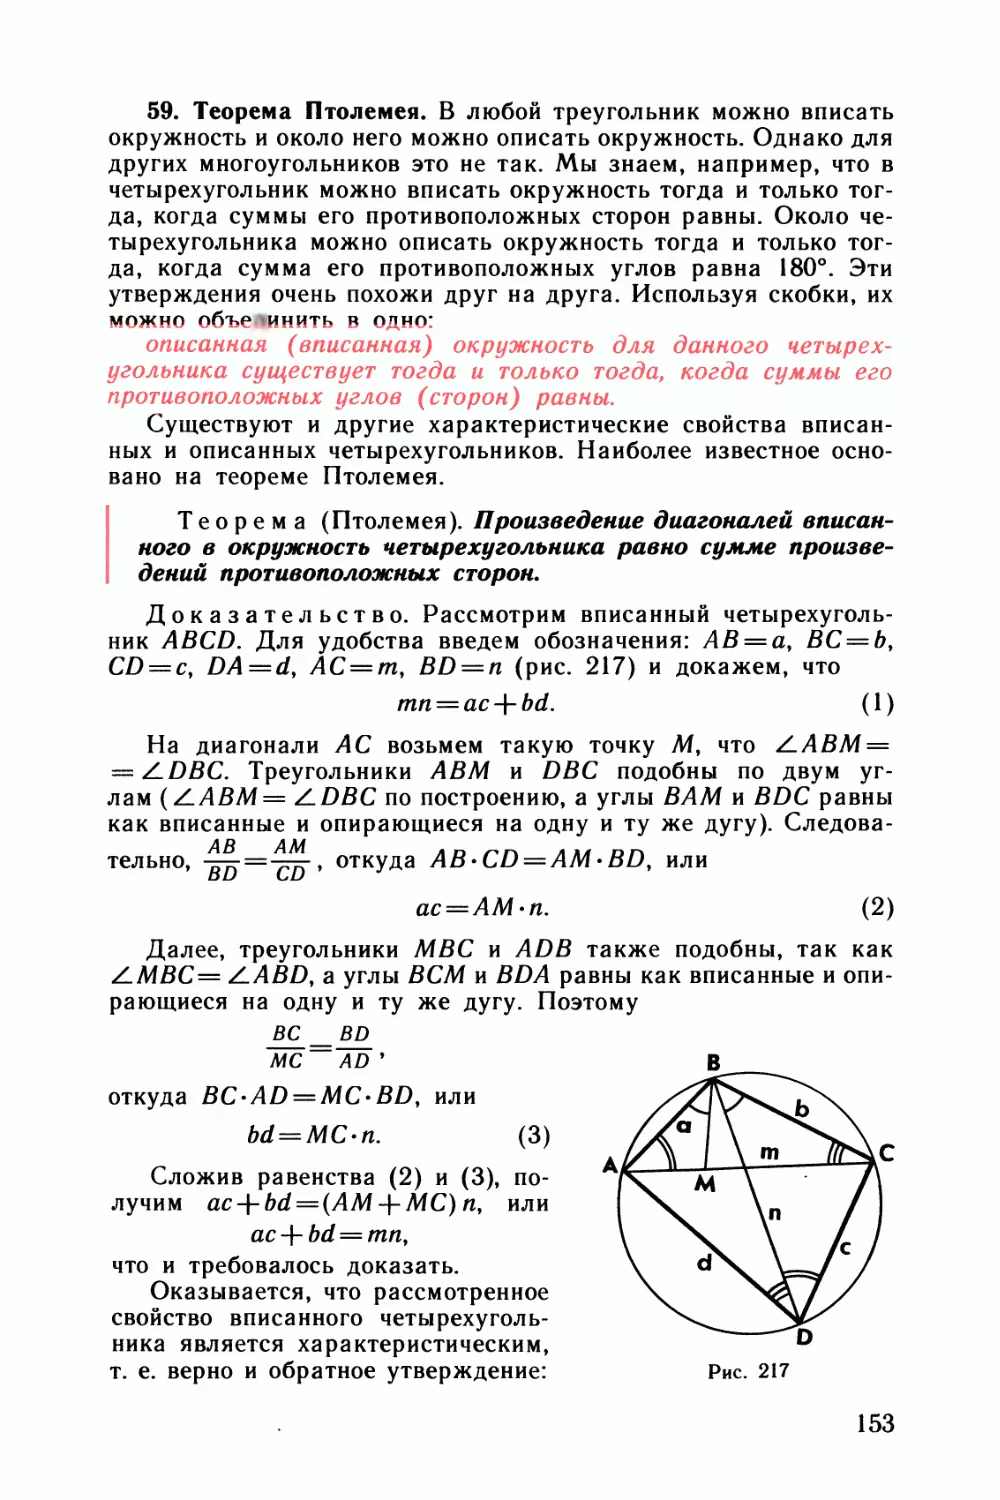 59. Теорема Птолемея